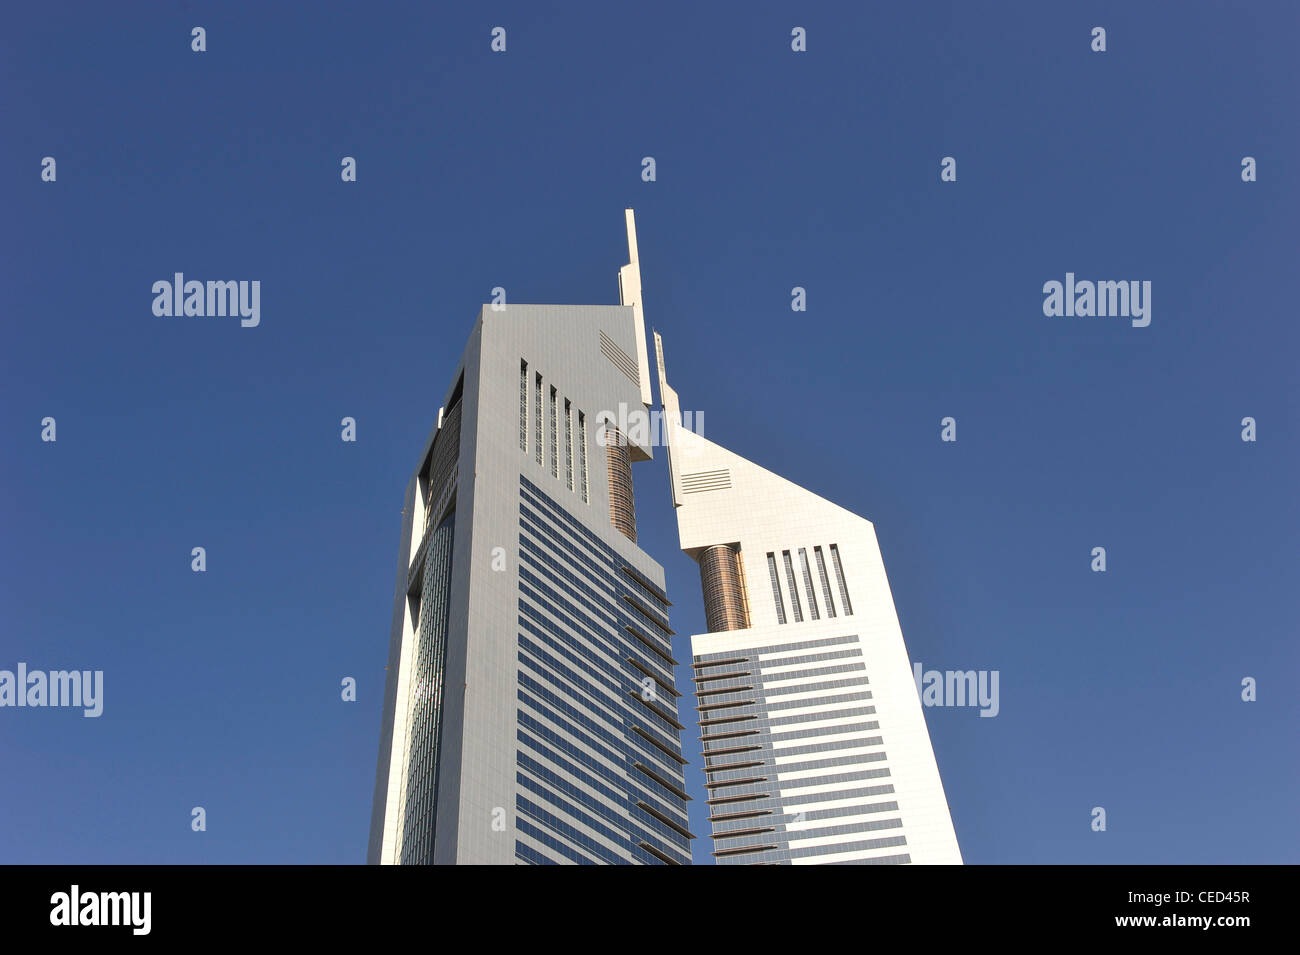 Unis tours, gratte-ciel, l'architecture moderne, du quartier financier, Dubaï, Émirats arabes unis, Moyen Orient Banque D'Images